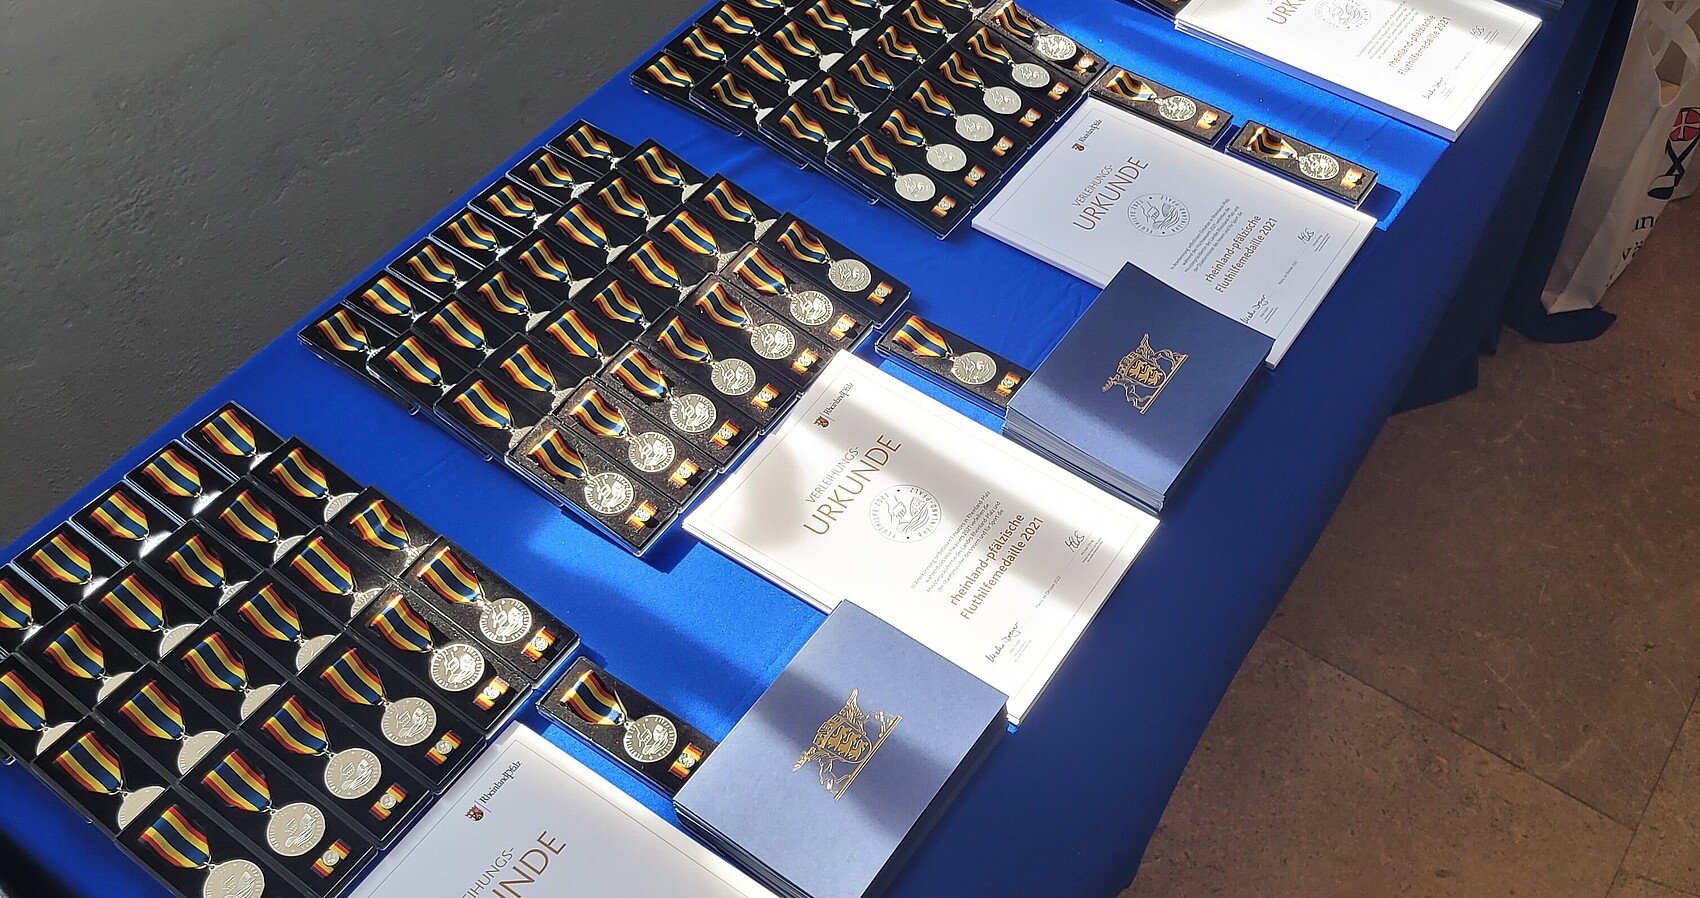 Medaillen und Urkunden liegen auf einem Tisch mit blauem Tischtuch